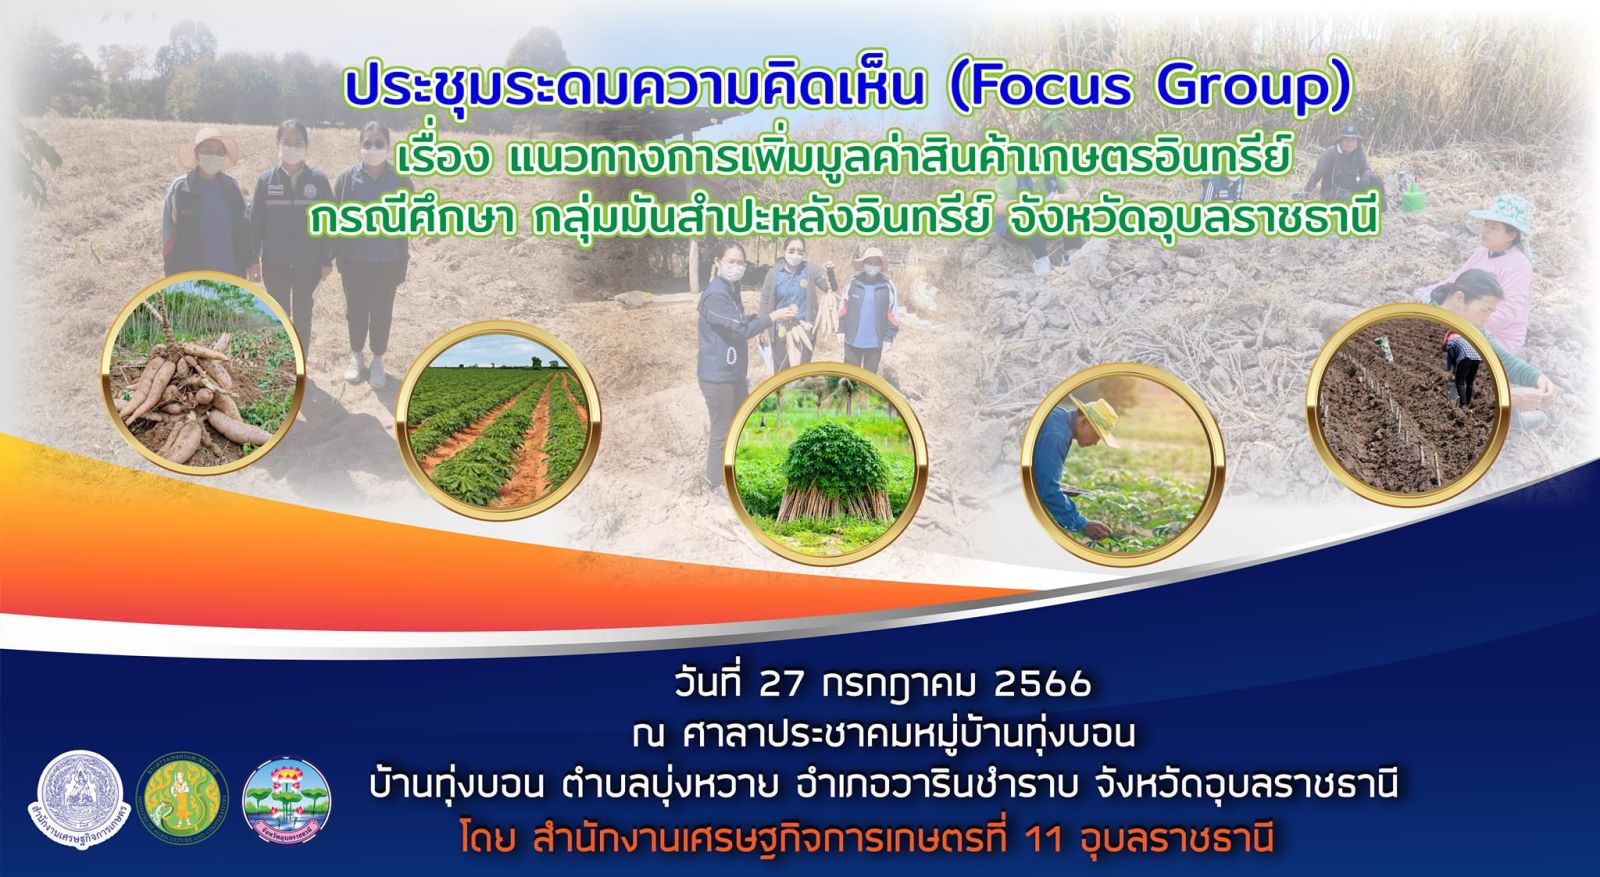 ประชุมระดมความคิดเห็น Focus group แนวทางการเพิ่มมูลค่าสินค้าเกษตรอินทรีย์ในระดับพื้นที่ ปีงบประมาณ 2566